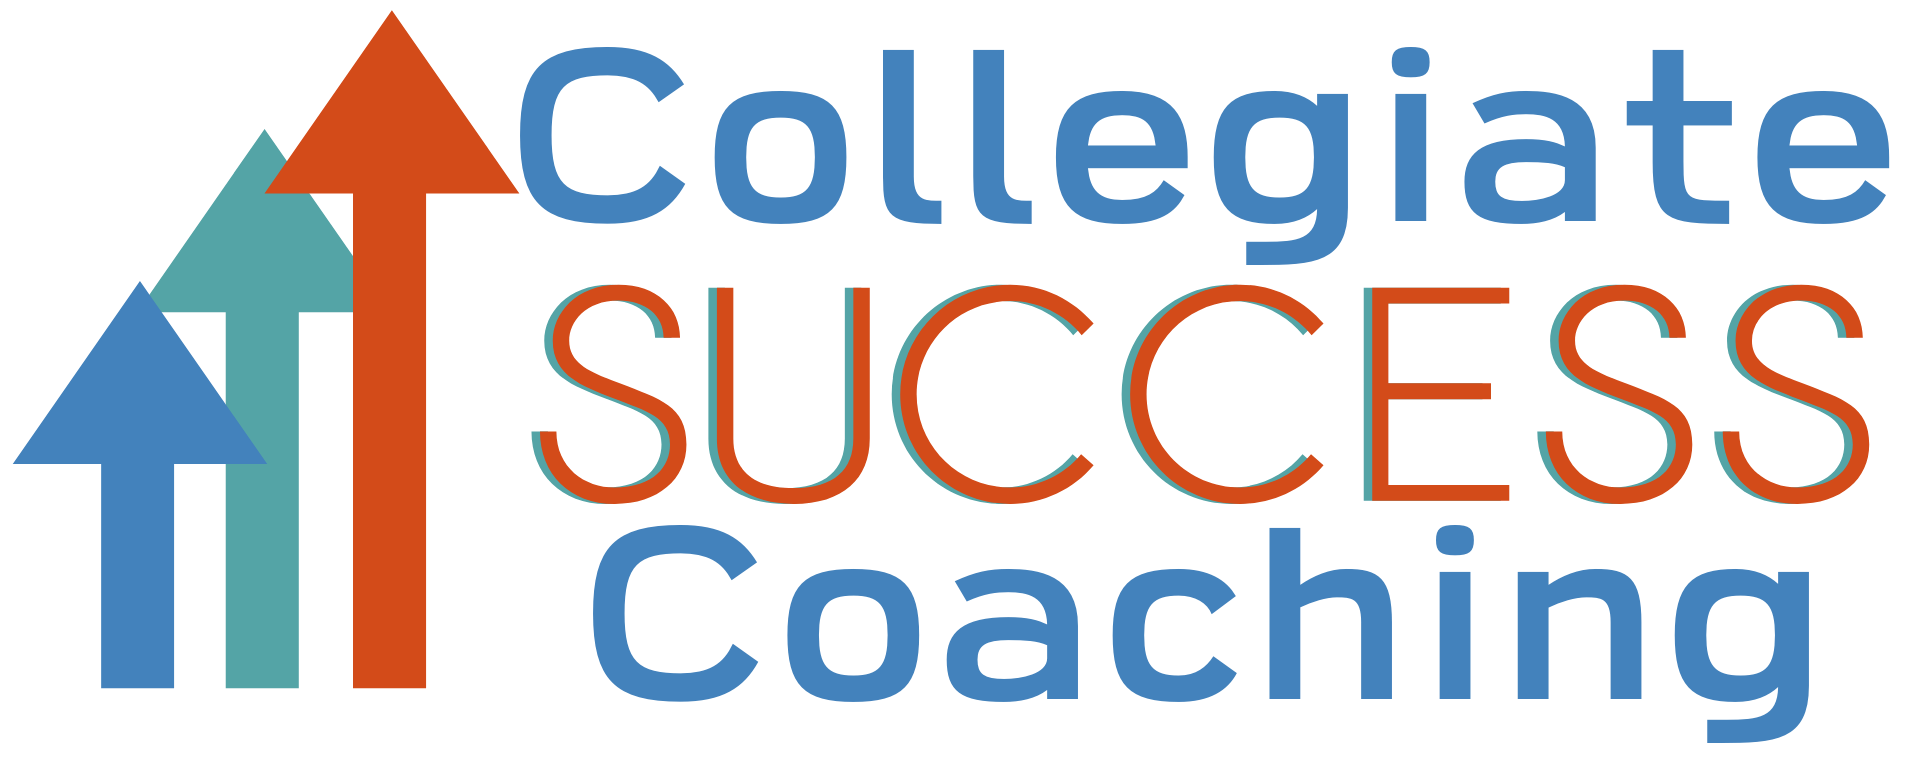 Collegiate Success Coaching